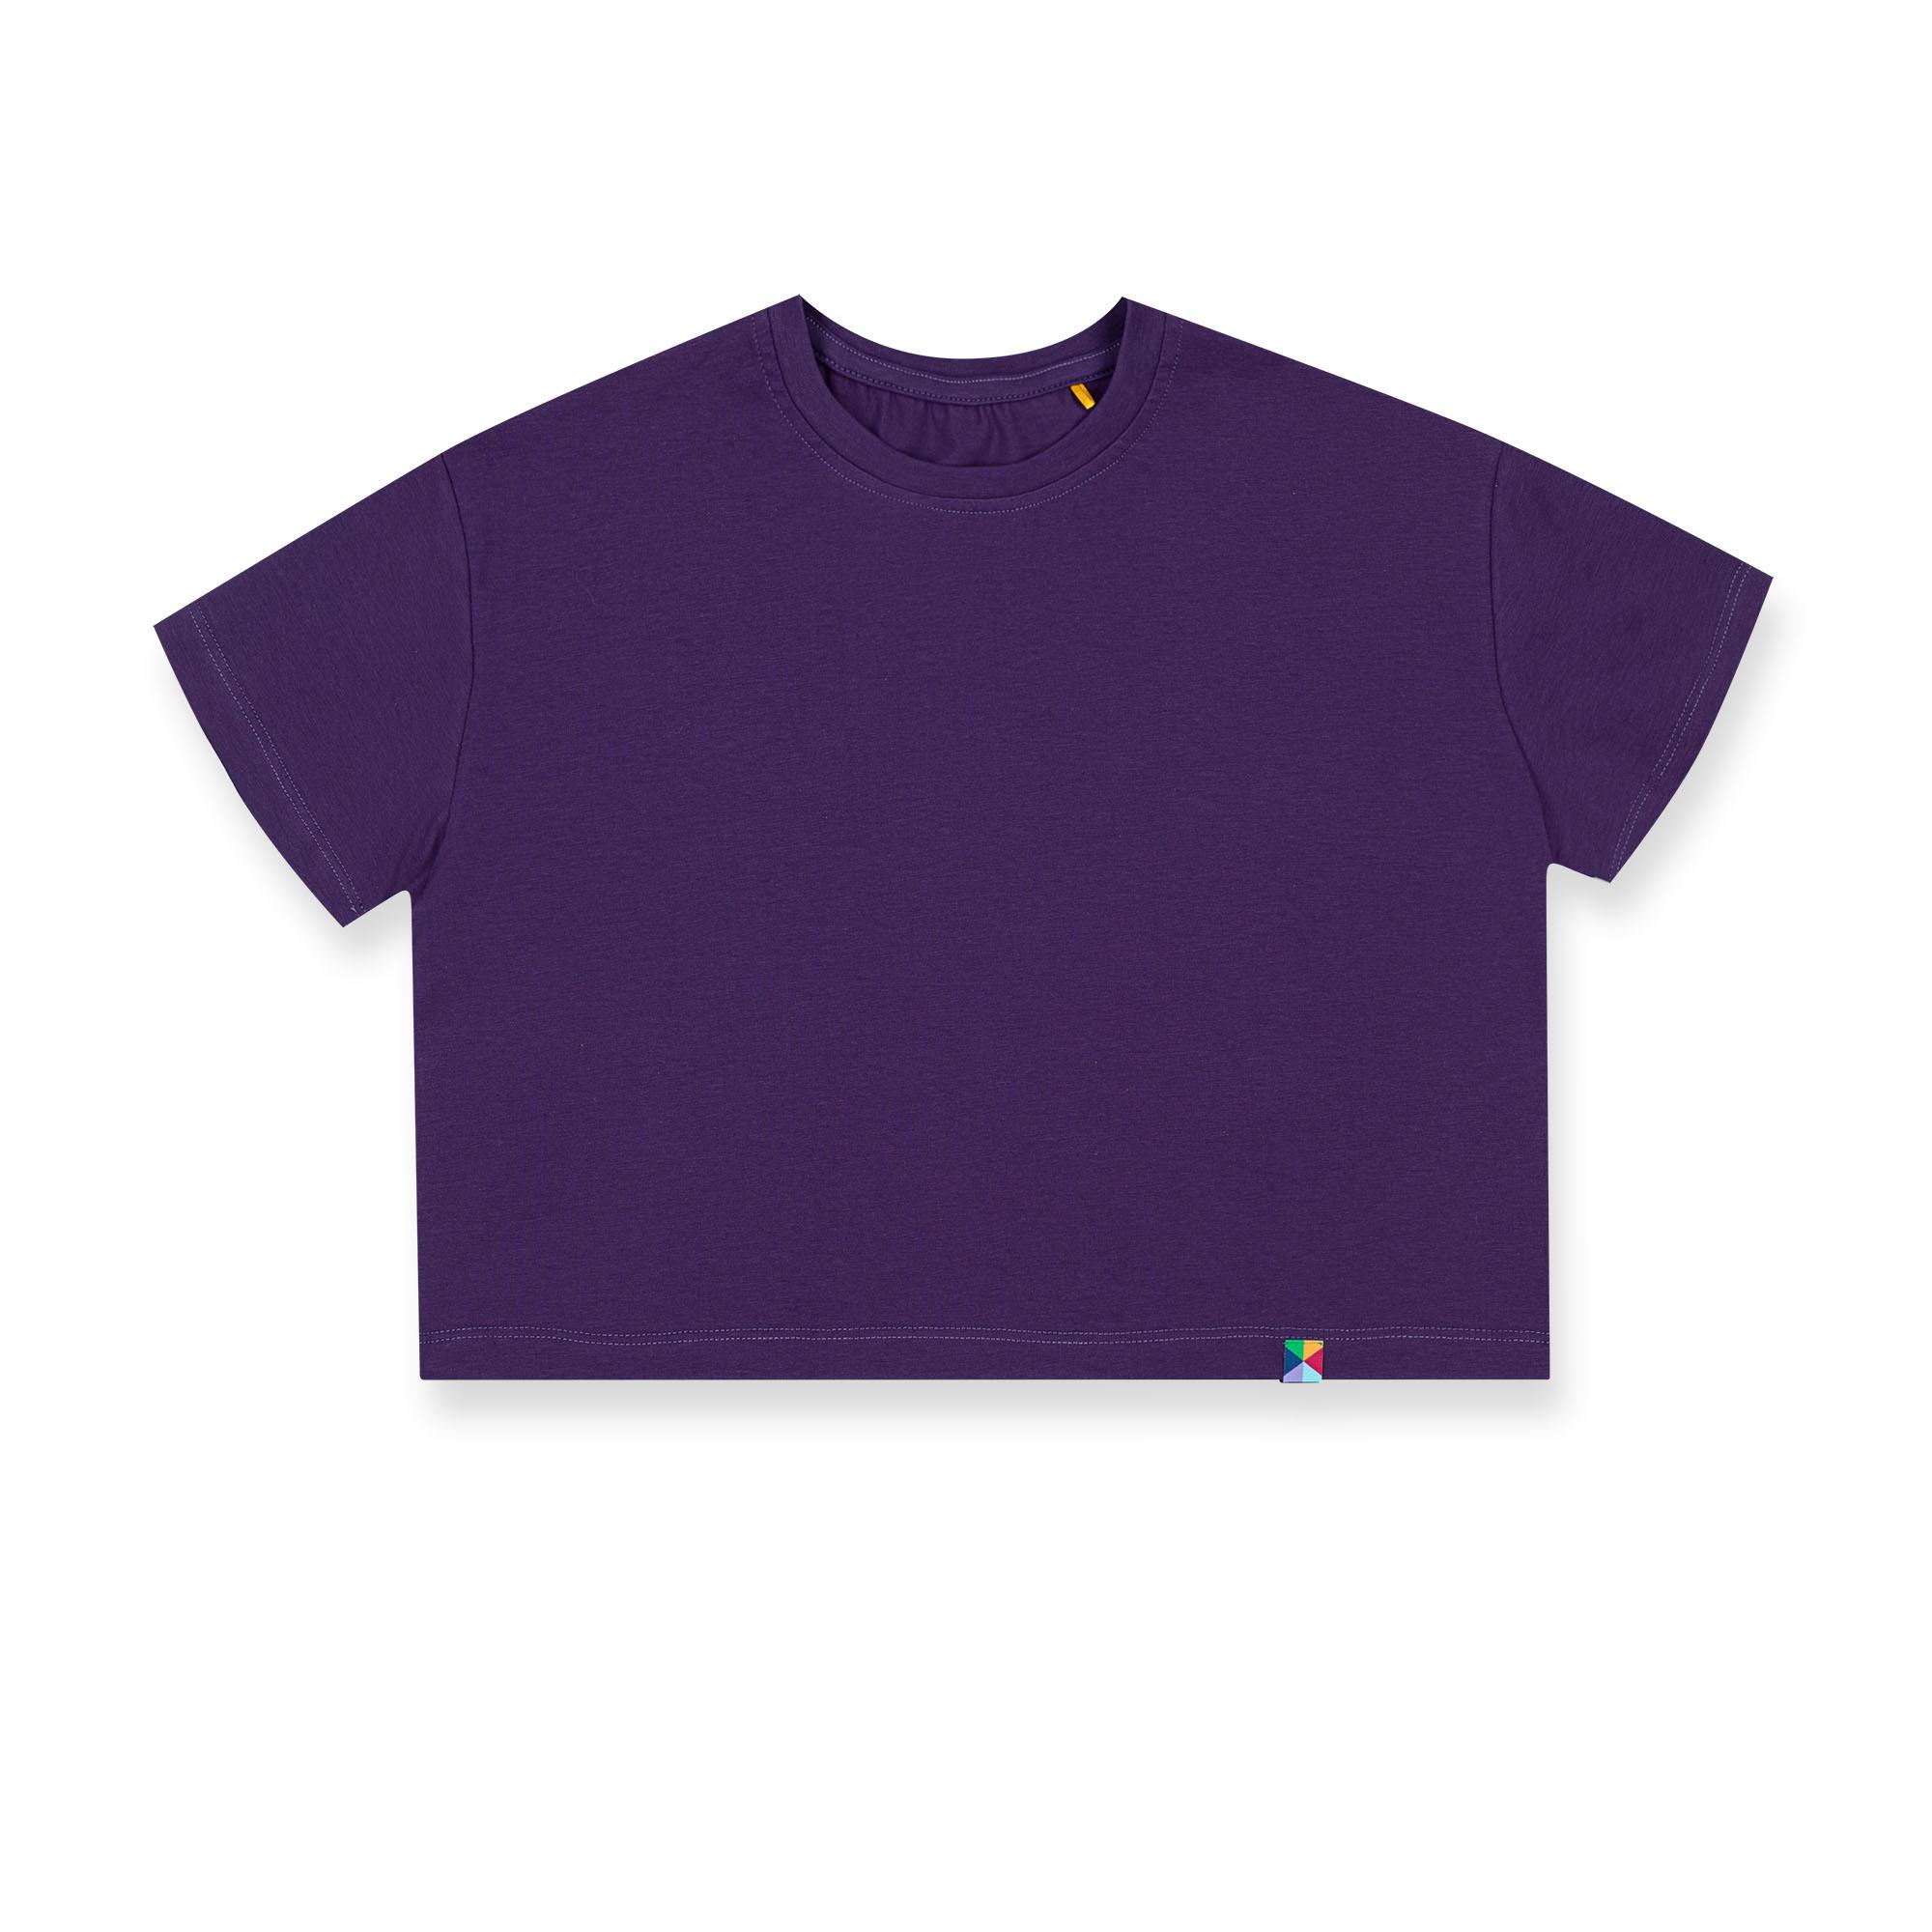 Fioletowy t-shirt o luźnym kroju